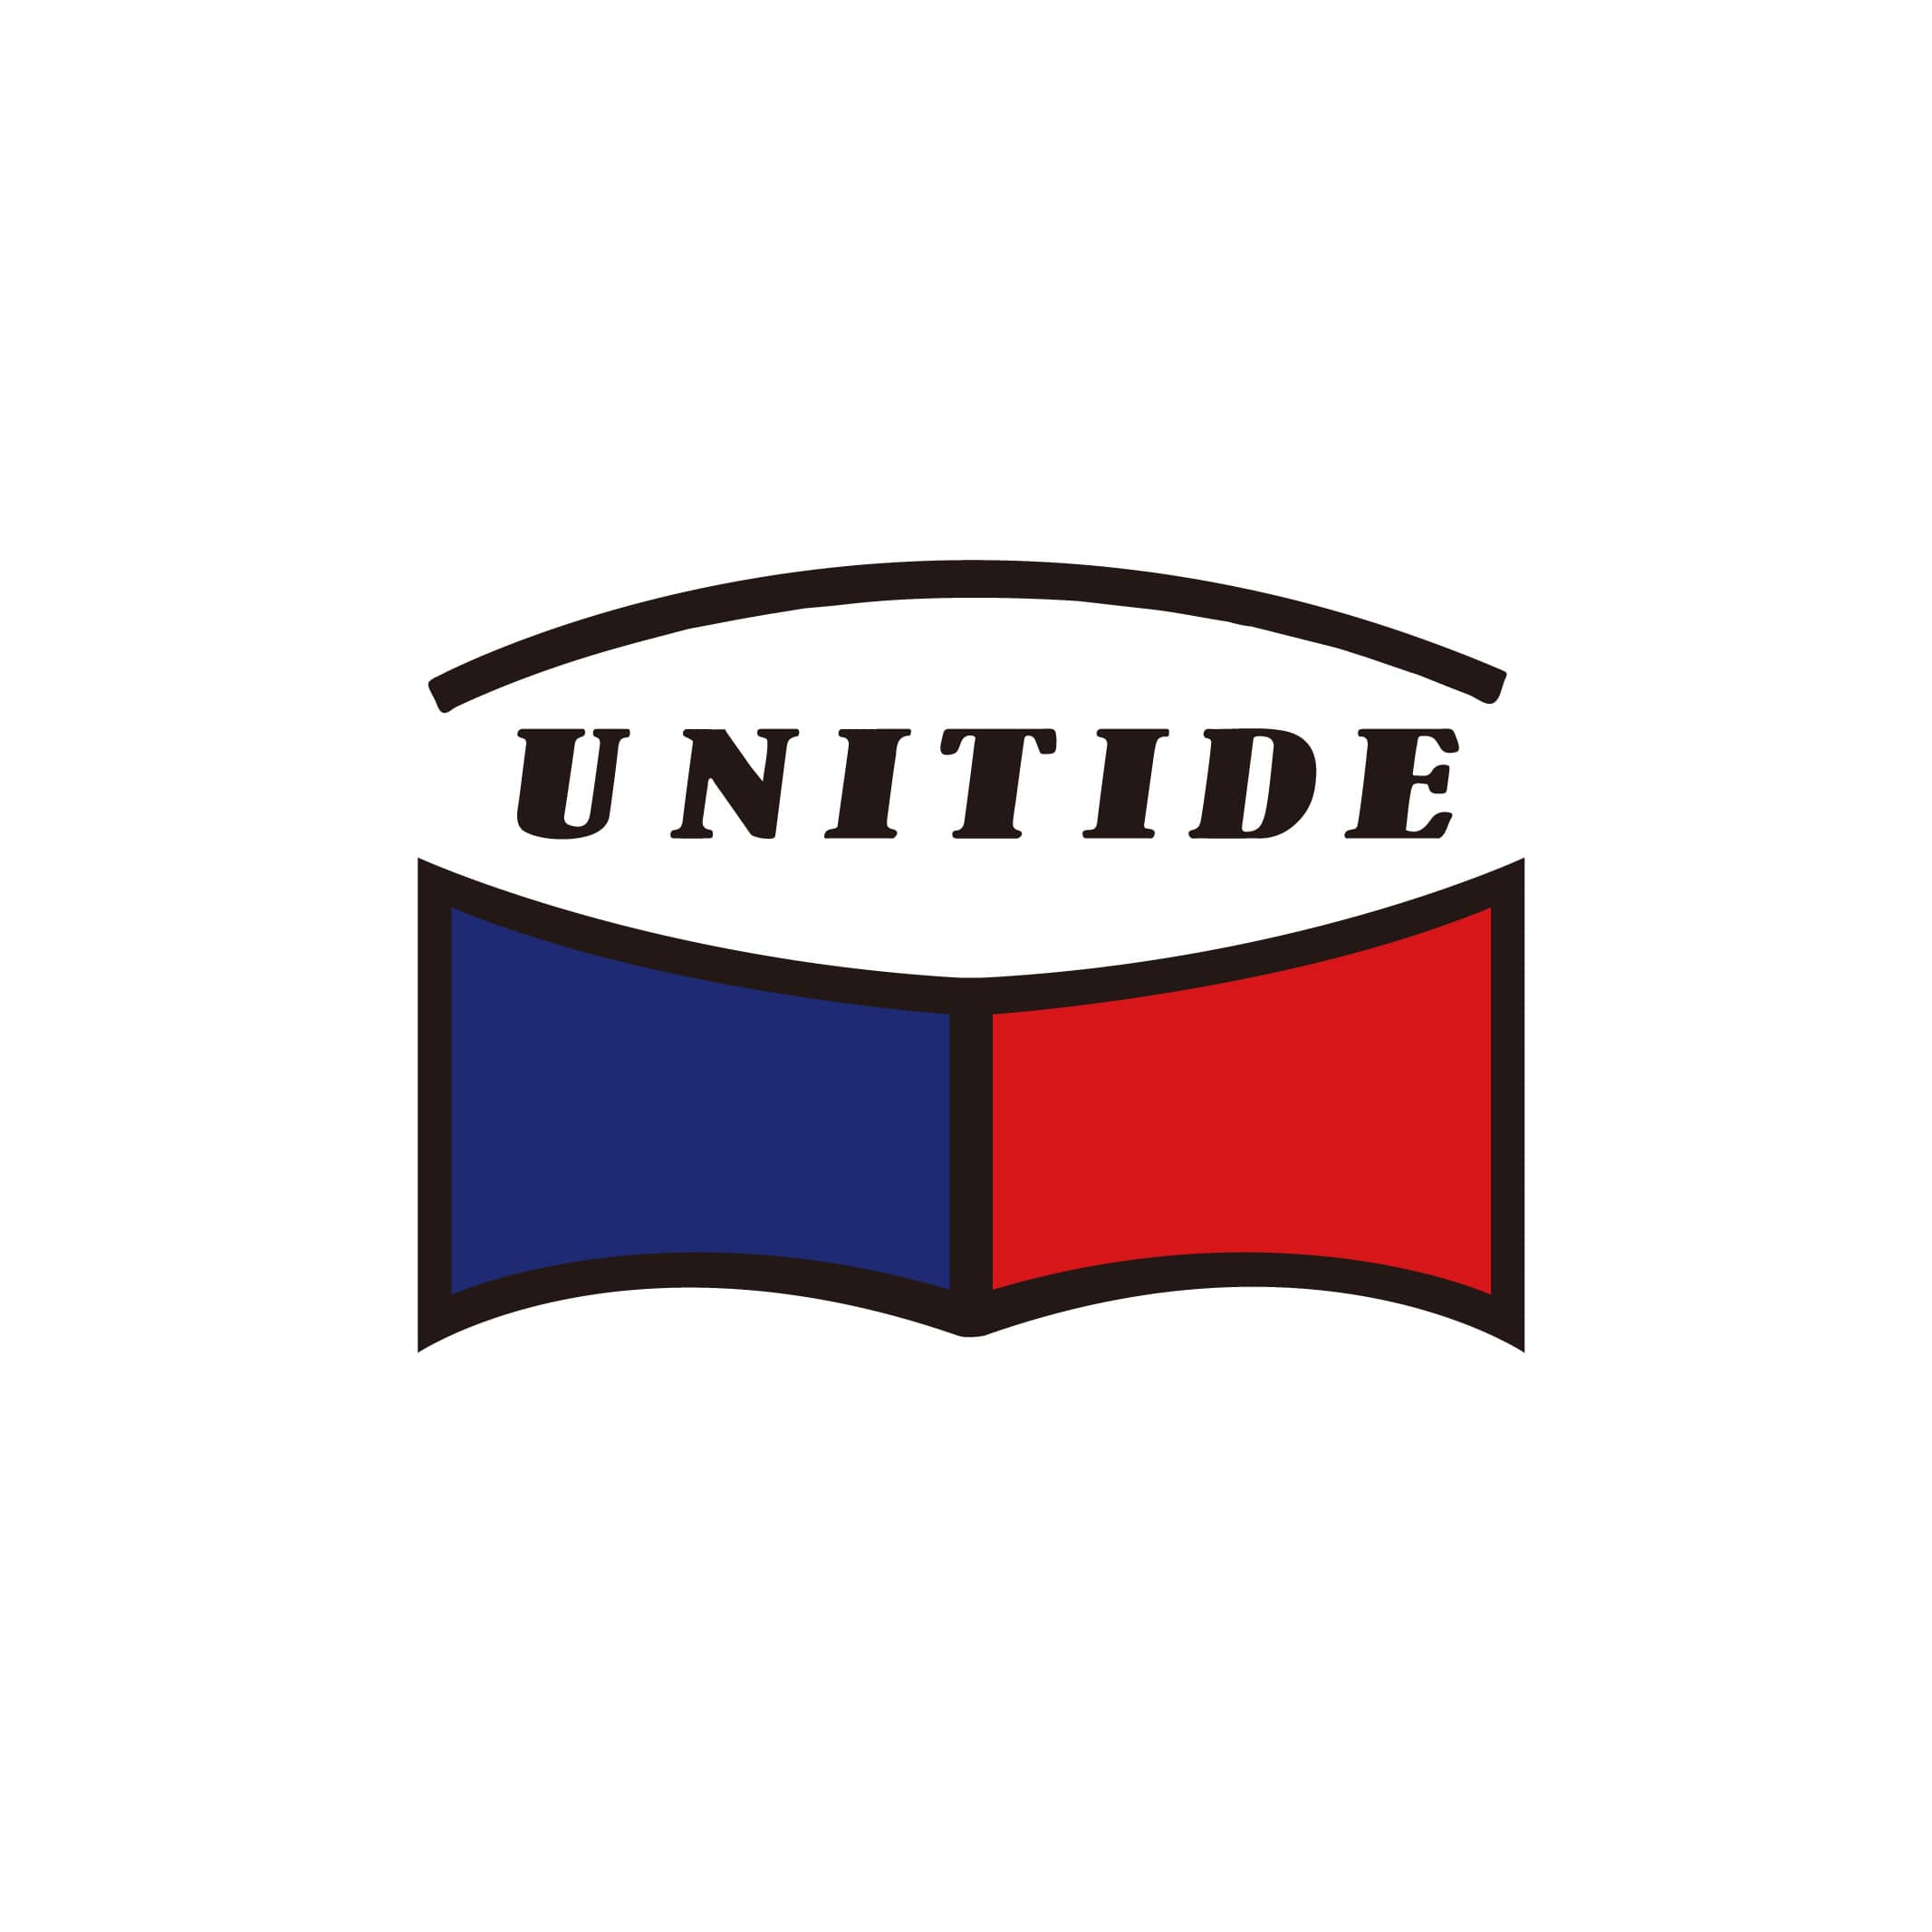 About|UNITIDE INDUSTRIAL CO., LTD.